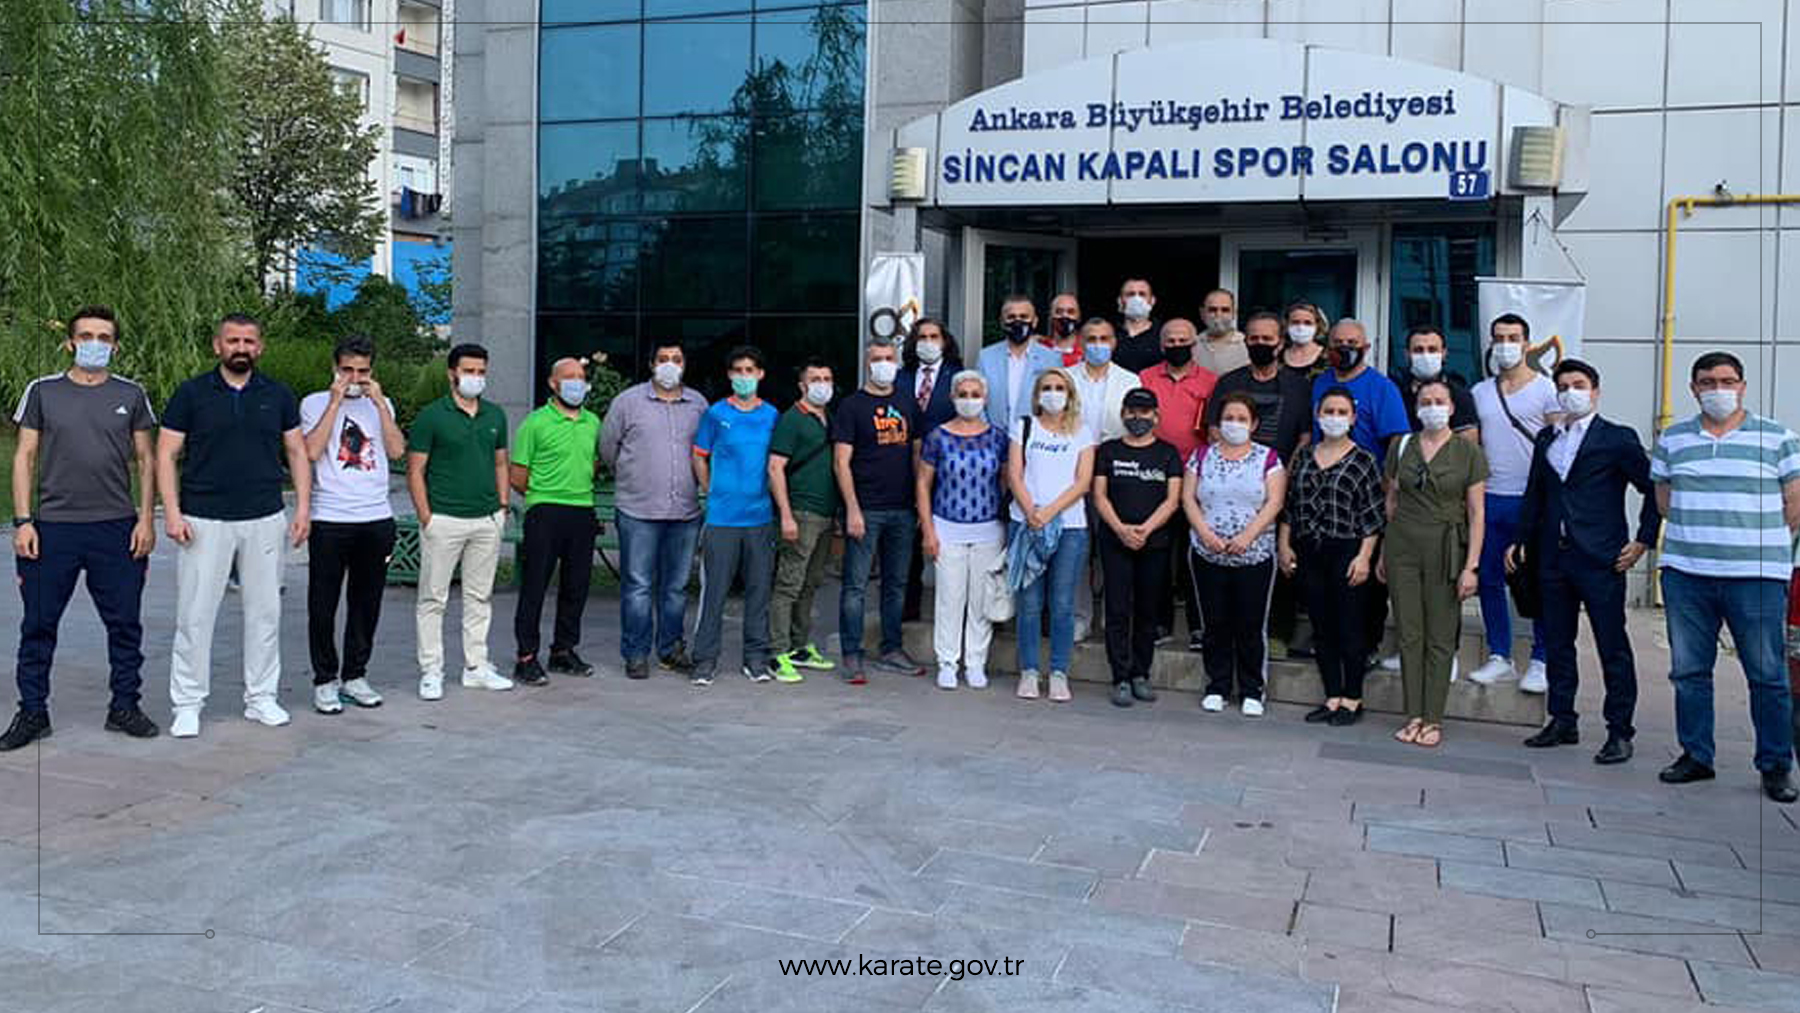 Ankara'nın zirvesi Karate oldu